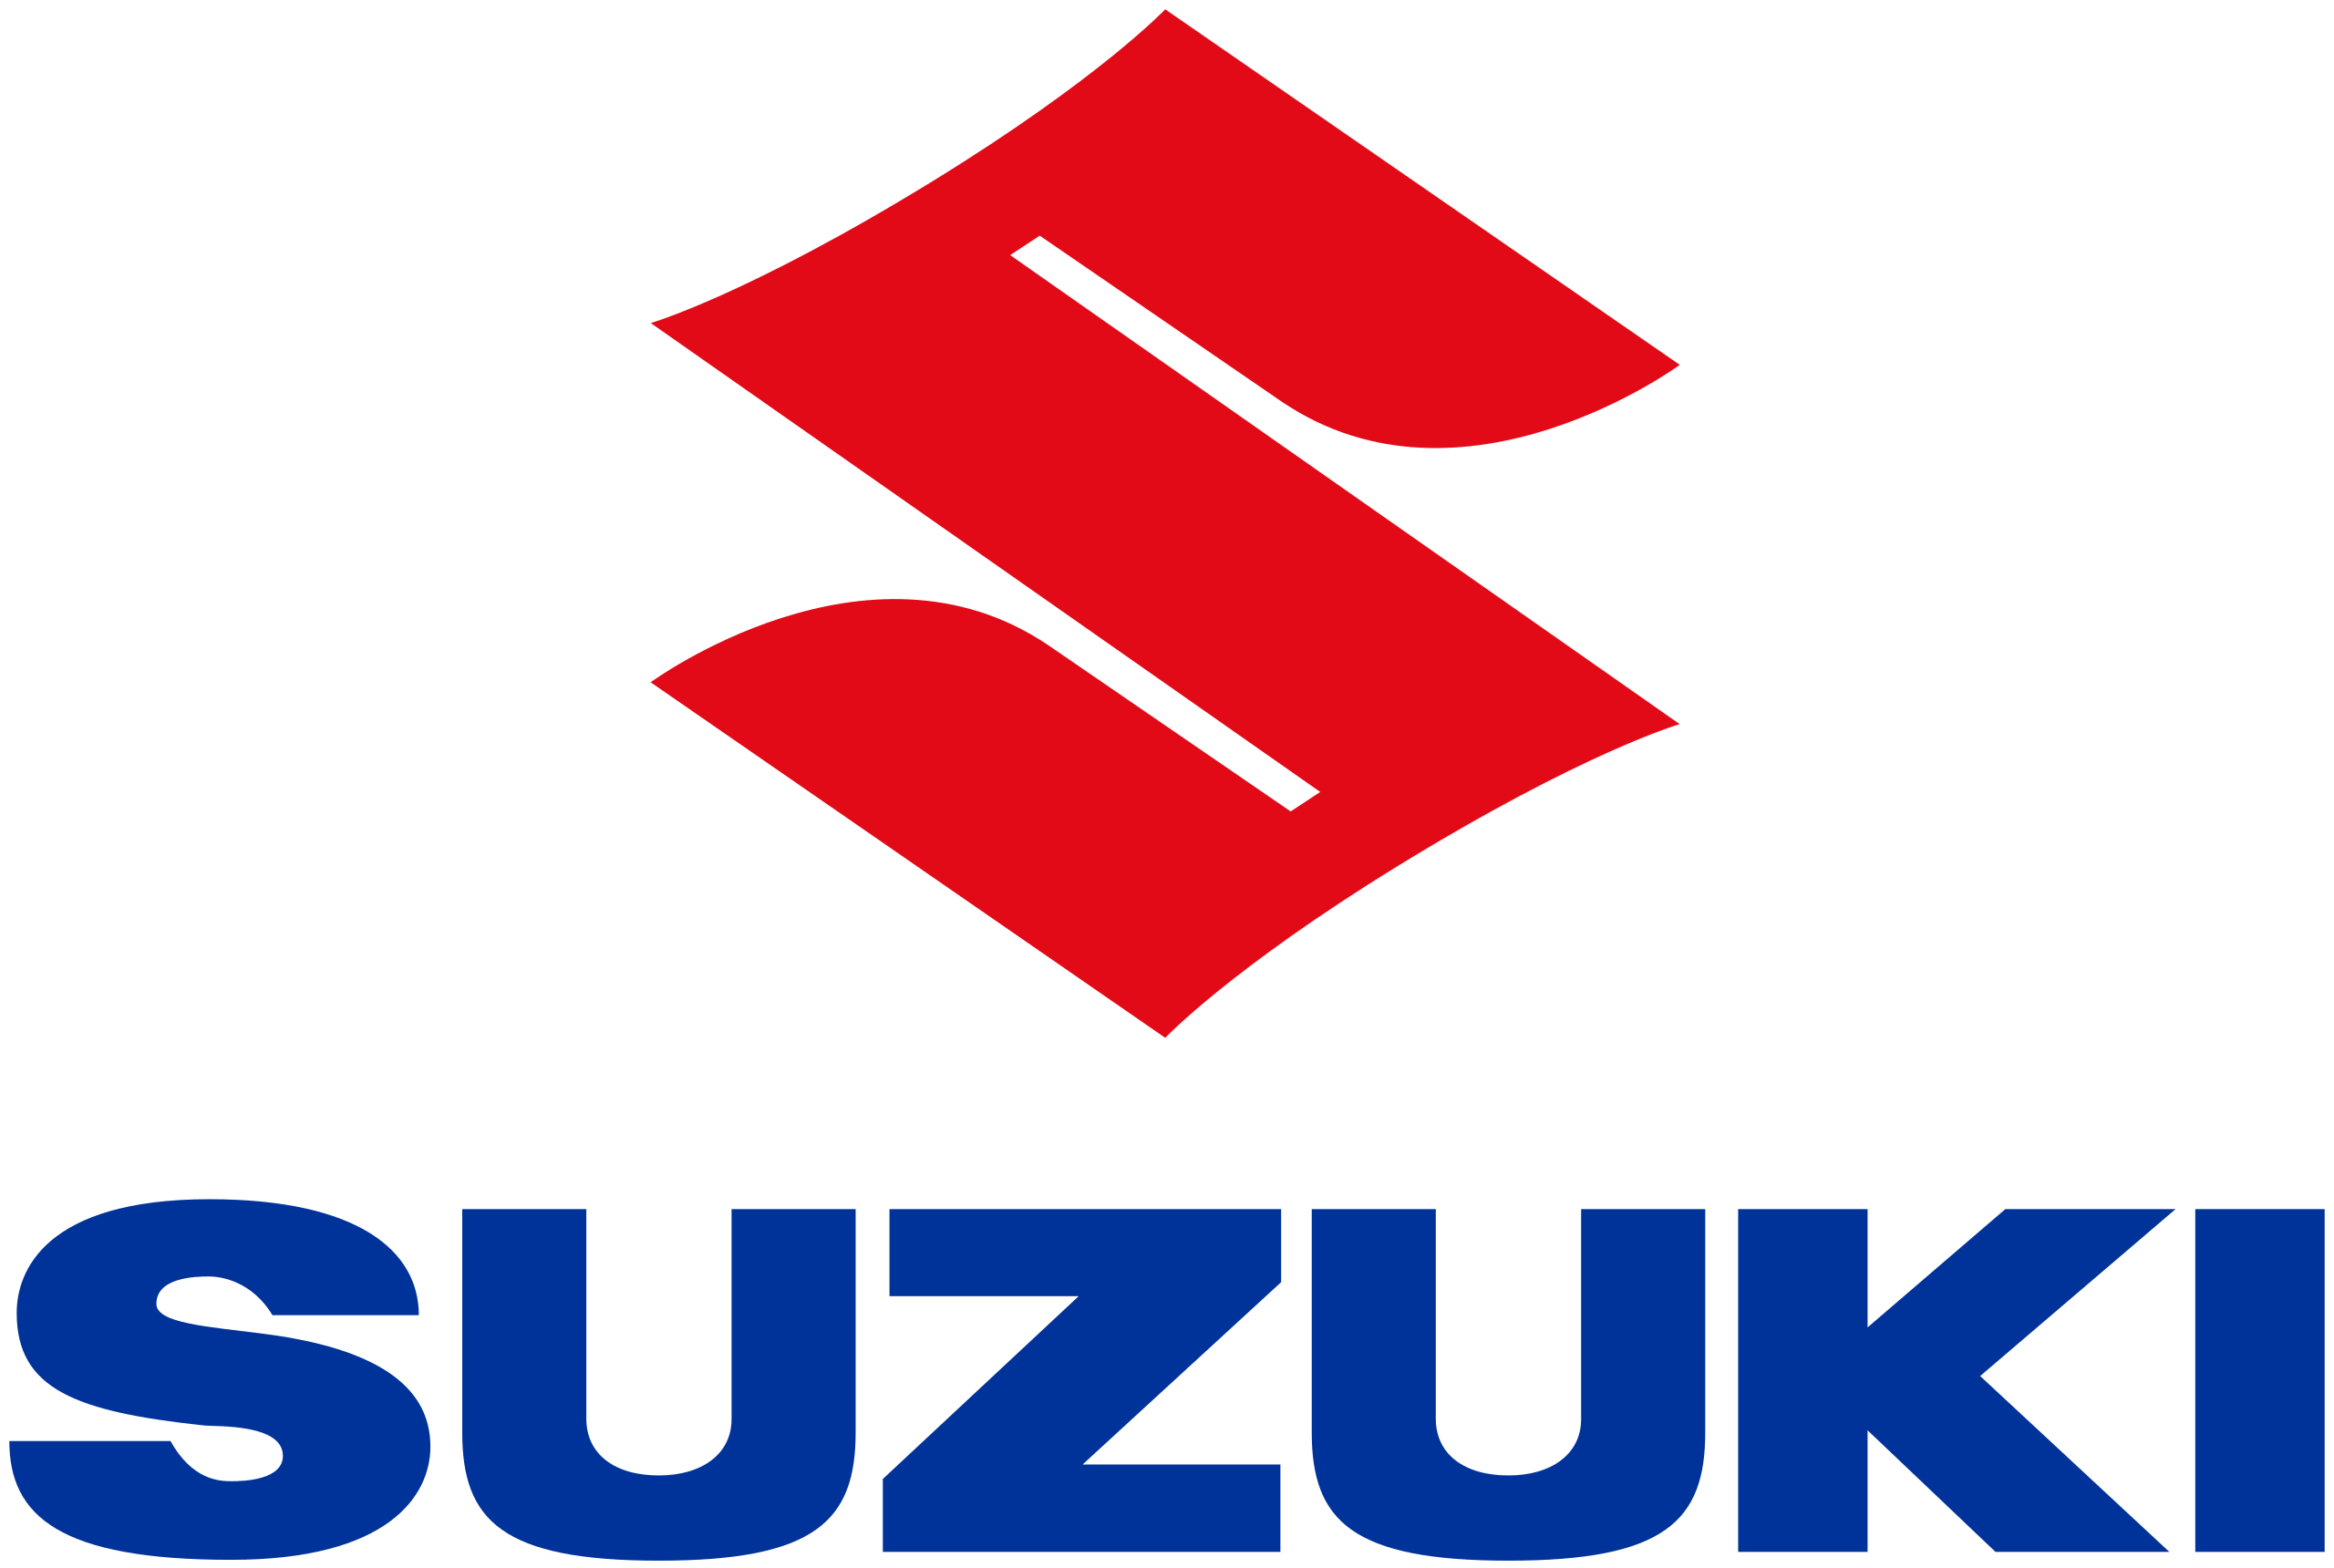 Pezulu Outdoor Advertising - Suzuki Client Logo